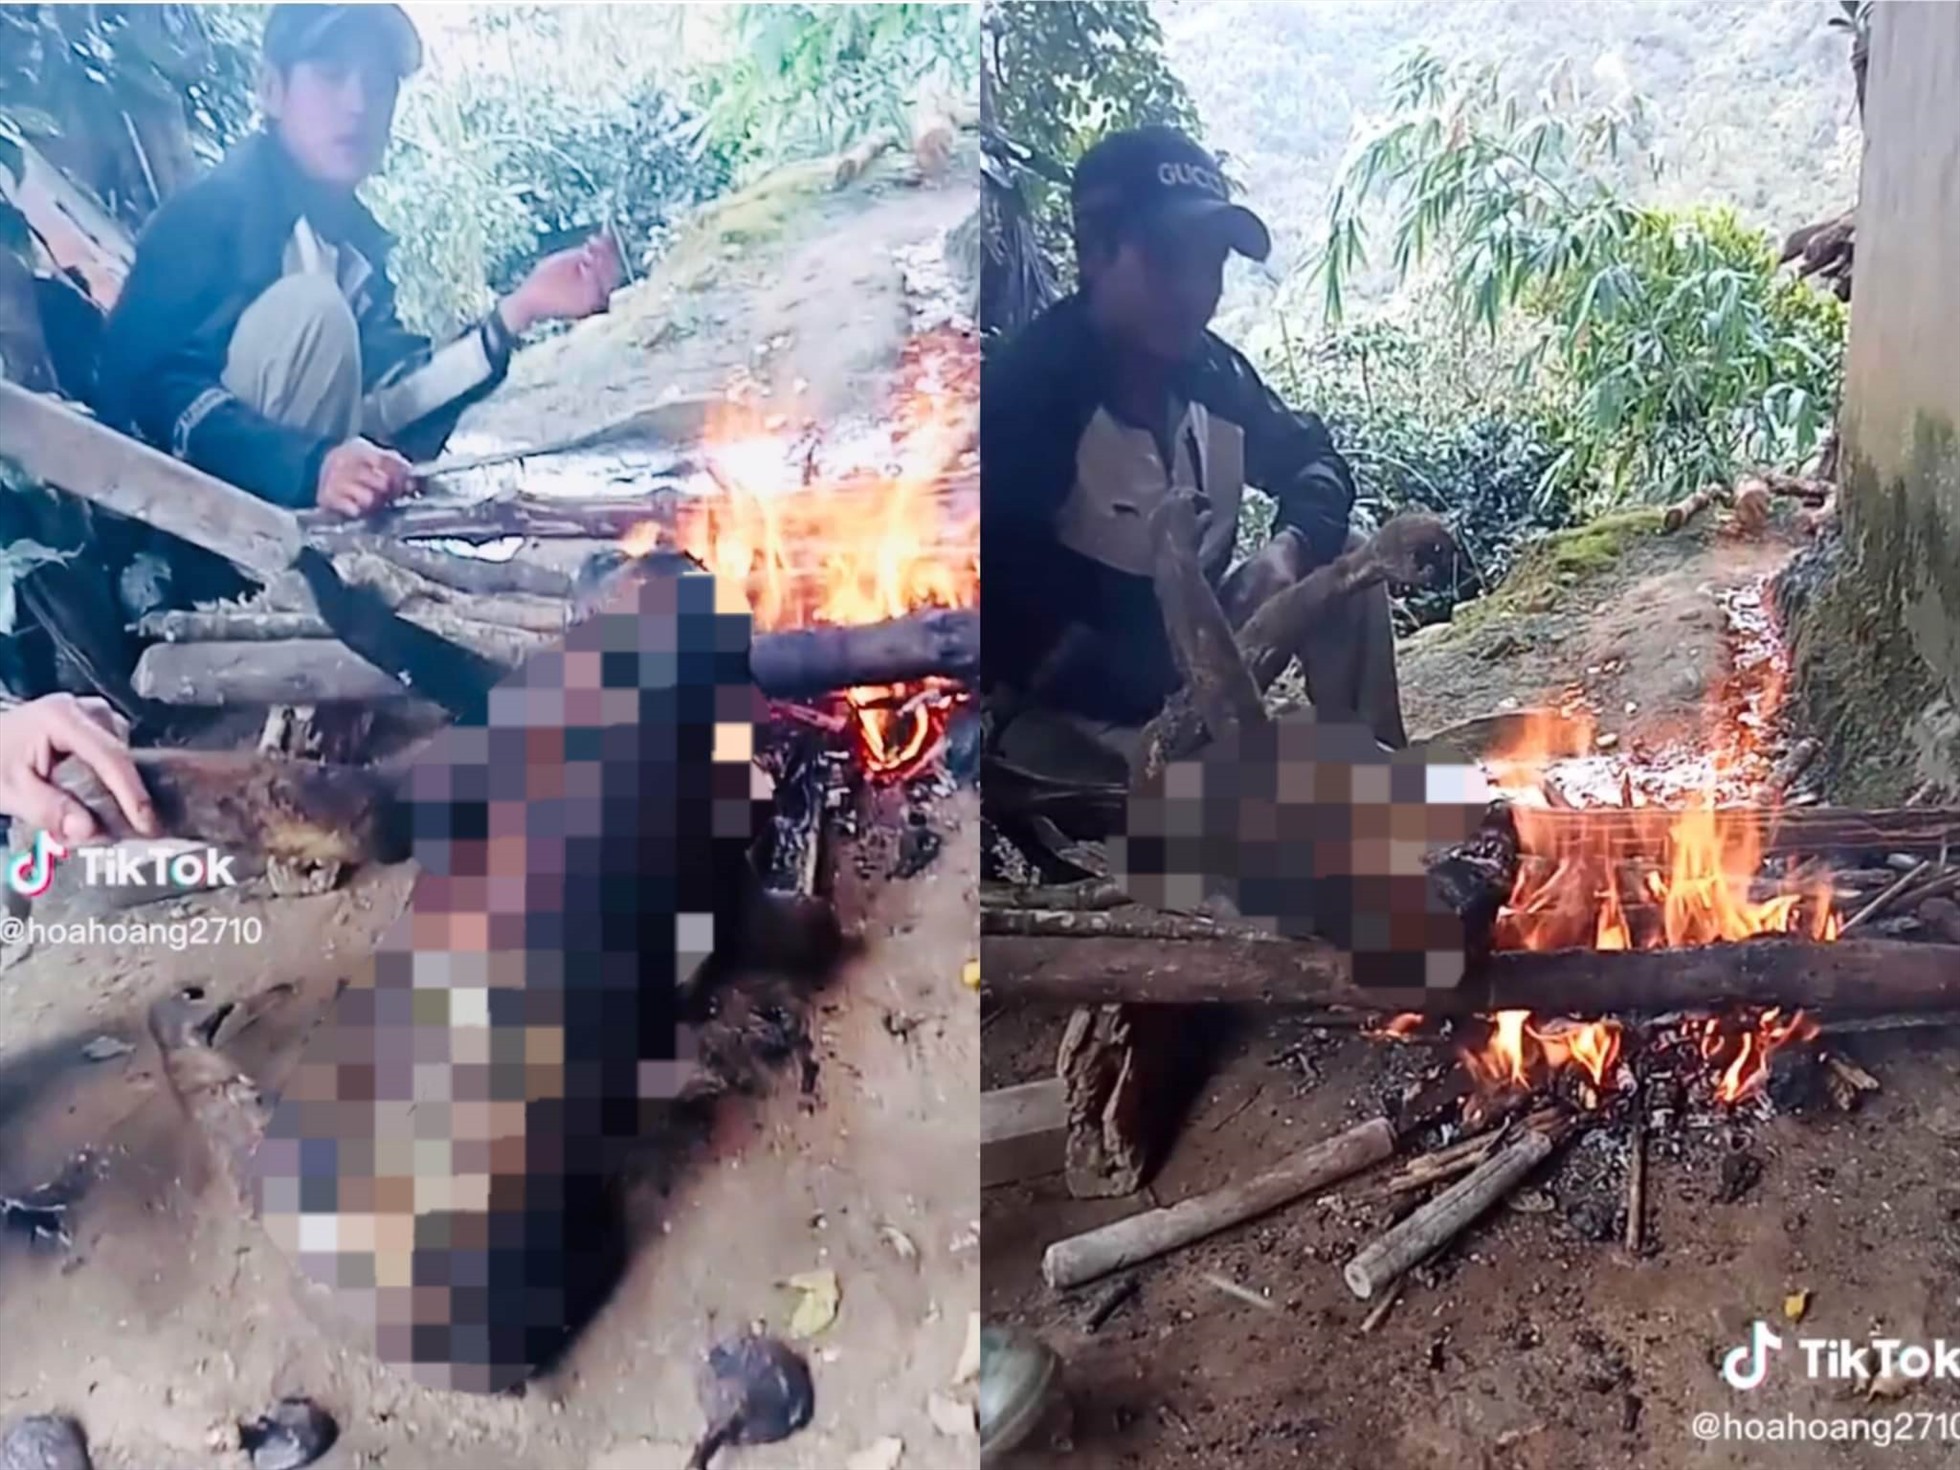 Hình ảnh trên video được đăng tải trên TikTok cho thấy hai người đàn ông đang nướng cháy một cá thể khỉ. Ảnh chụp màn hình: Hương Giang